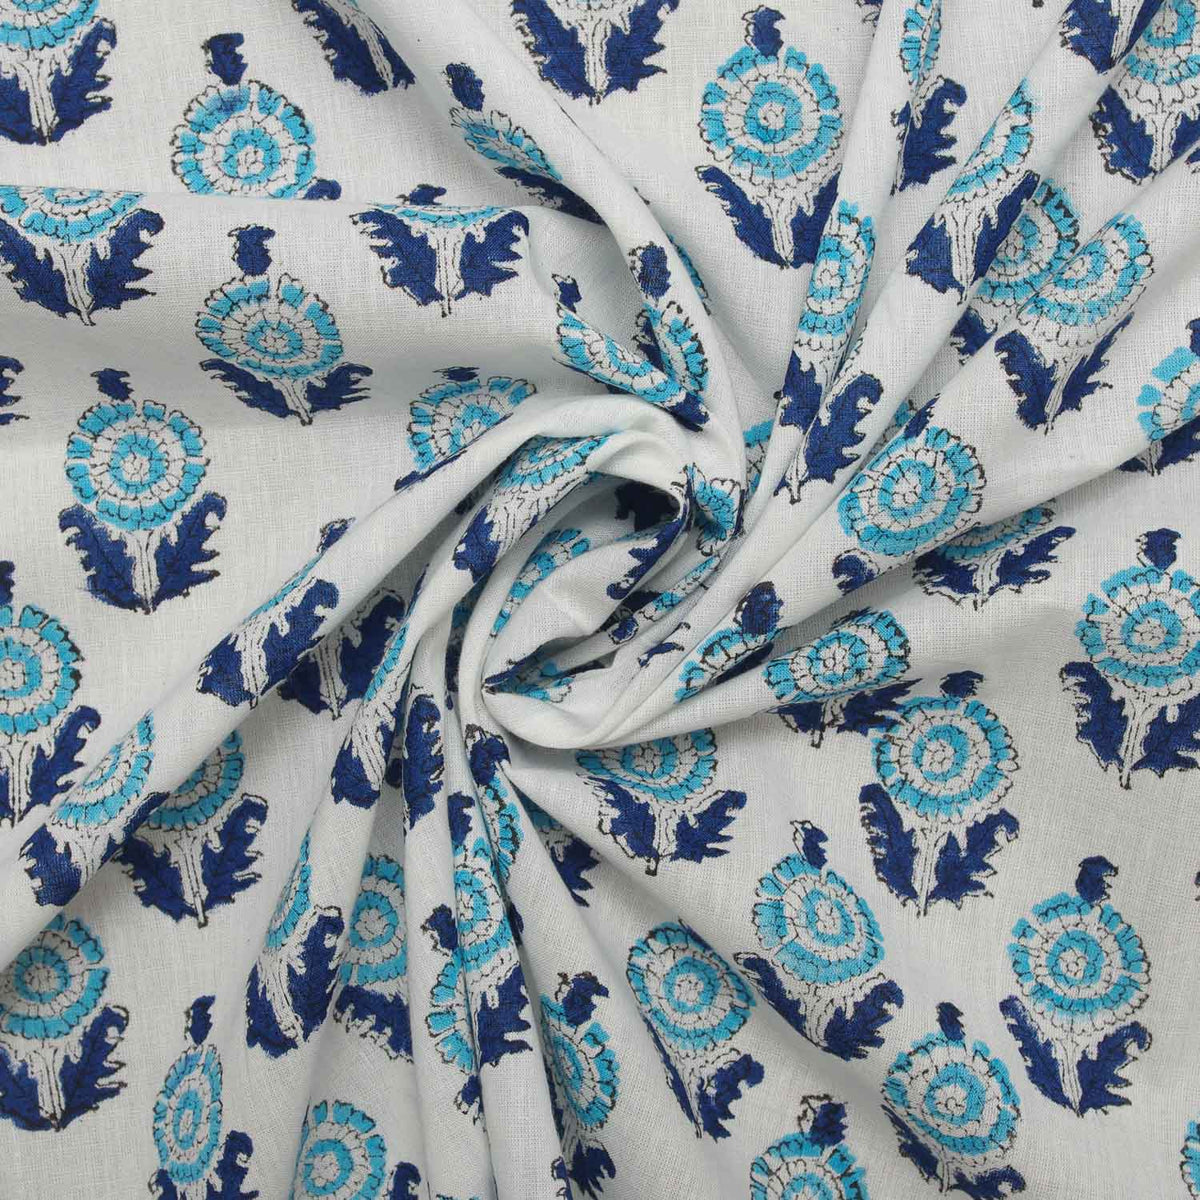 Indischer Handblockdruck, blaues Motiv, 100 % Baumwolle, Damenkleid, Stoff, Design 212